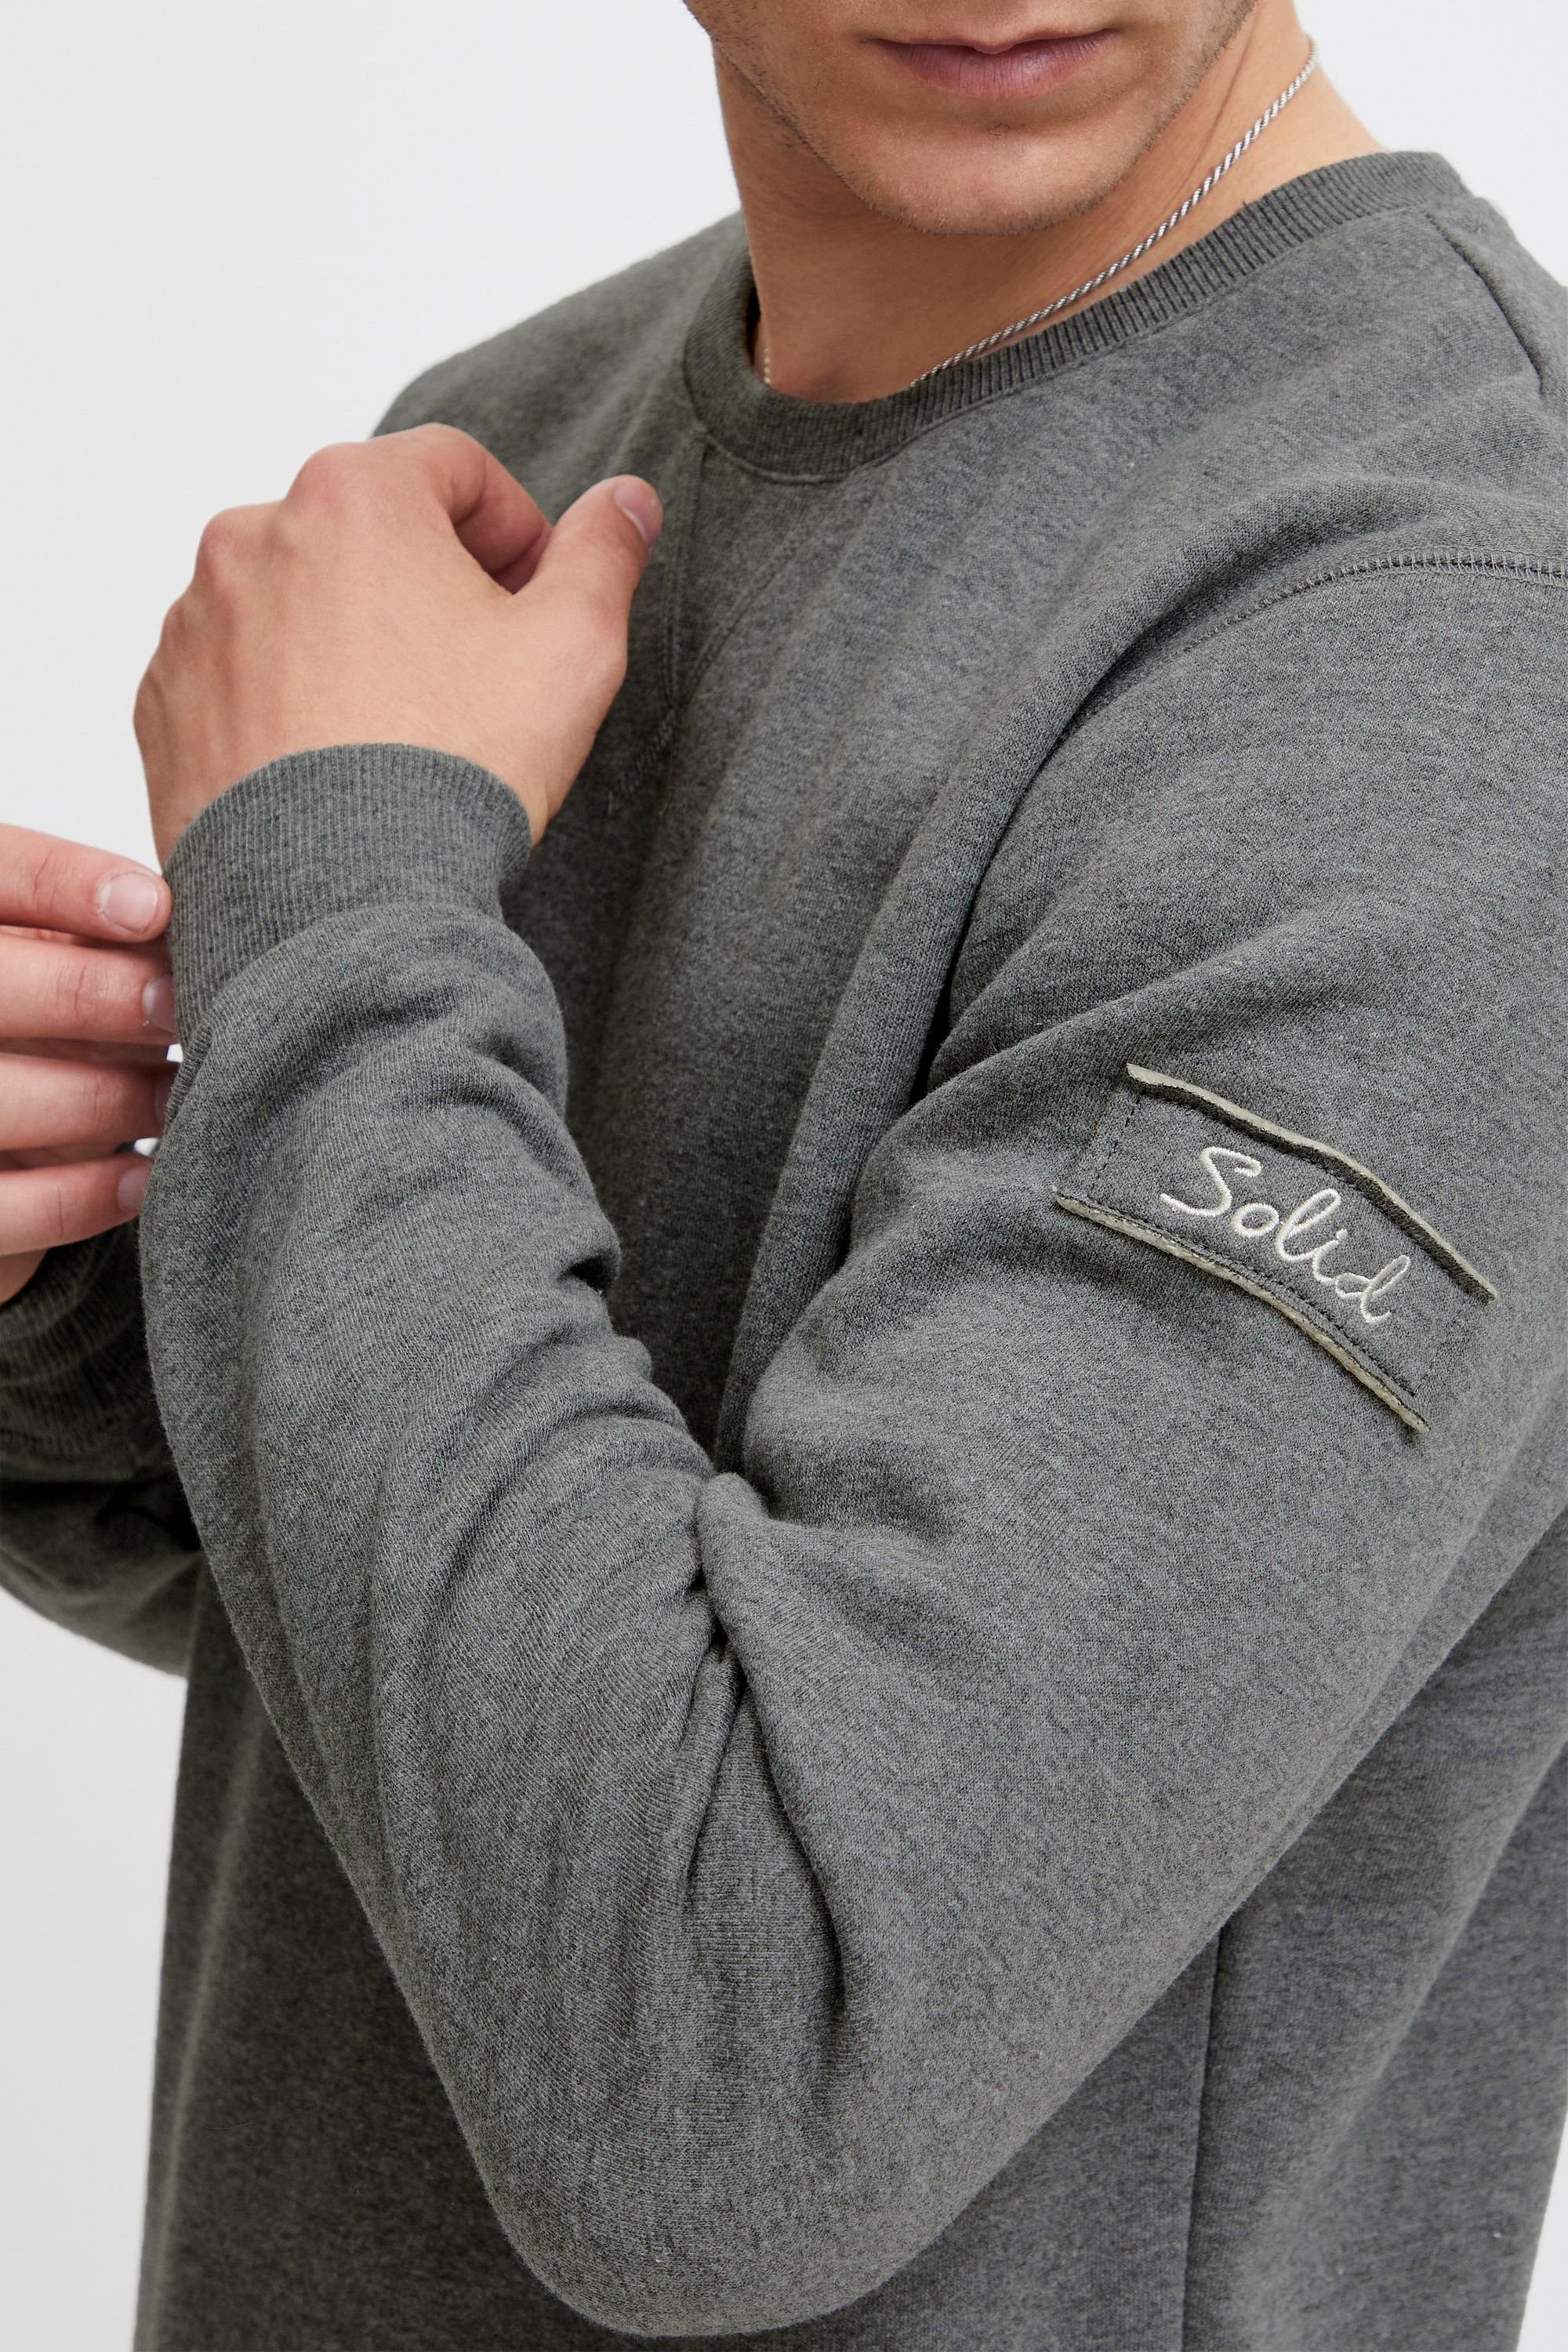 Solid Sweatshirt SDTrip Grey Sweatpullover Melange mit Fleece-Innenseite (8236) O-Neck